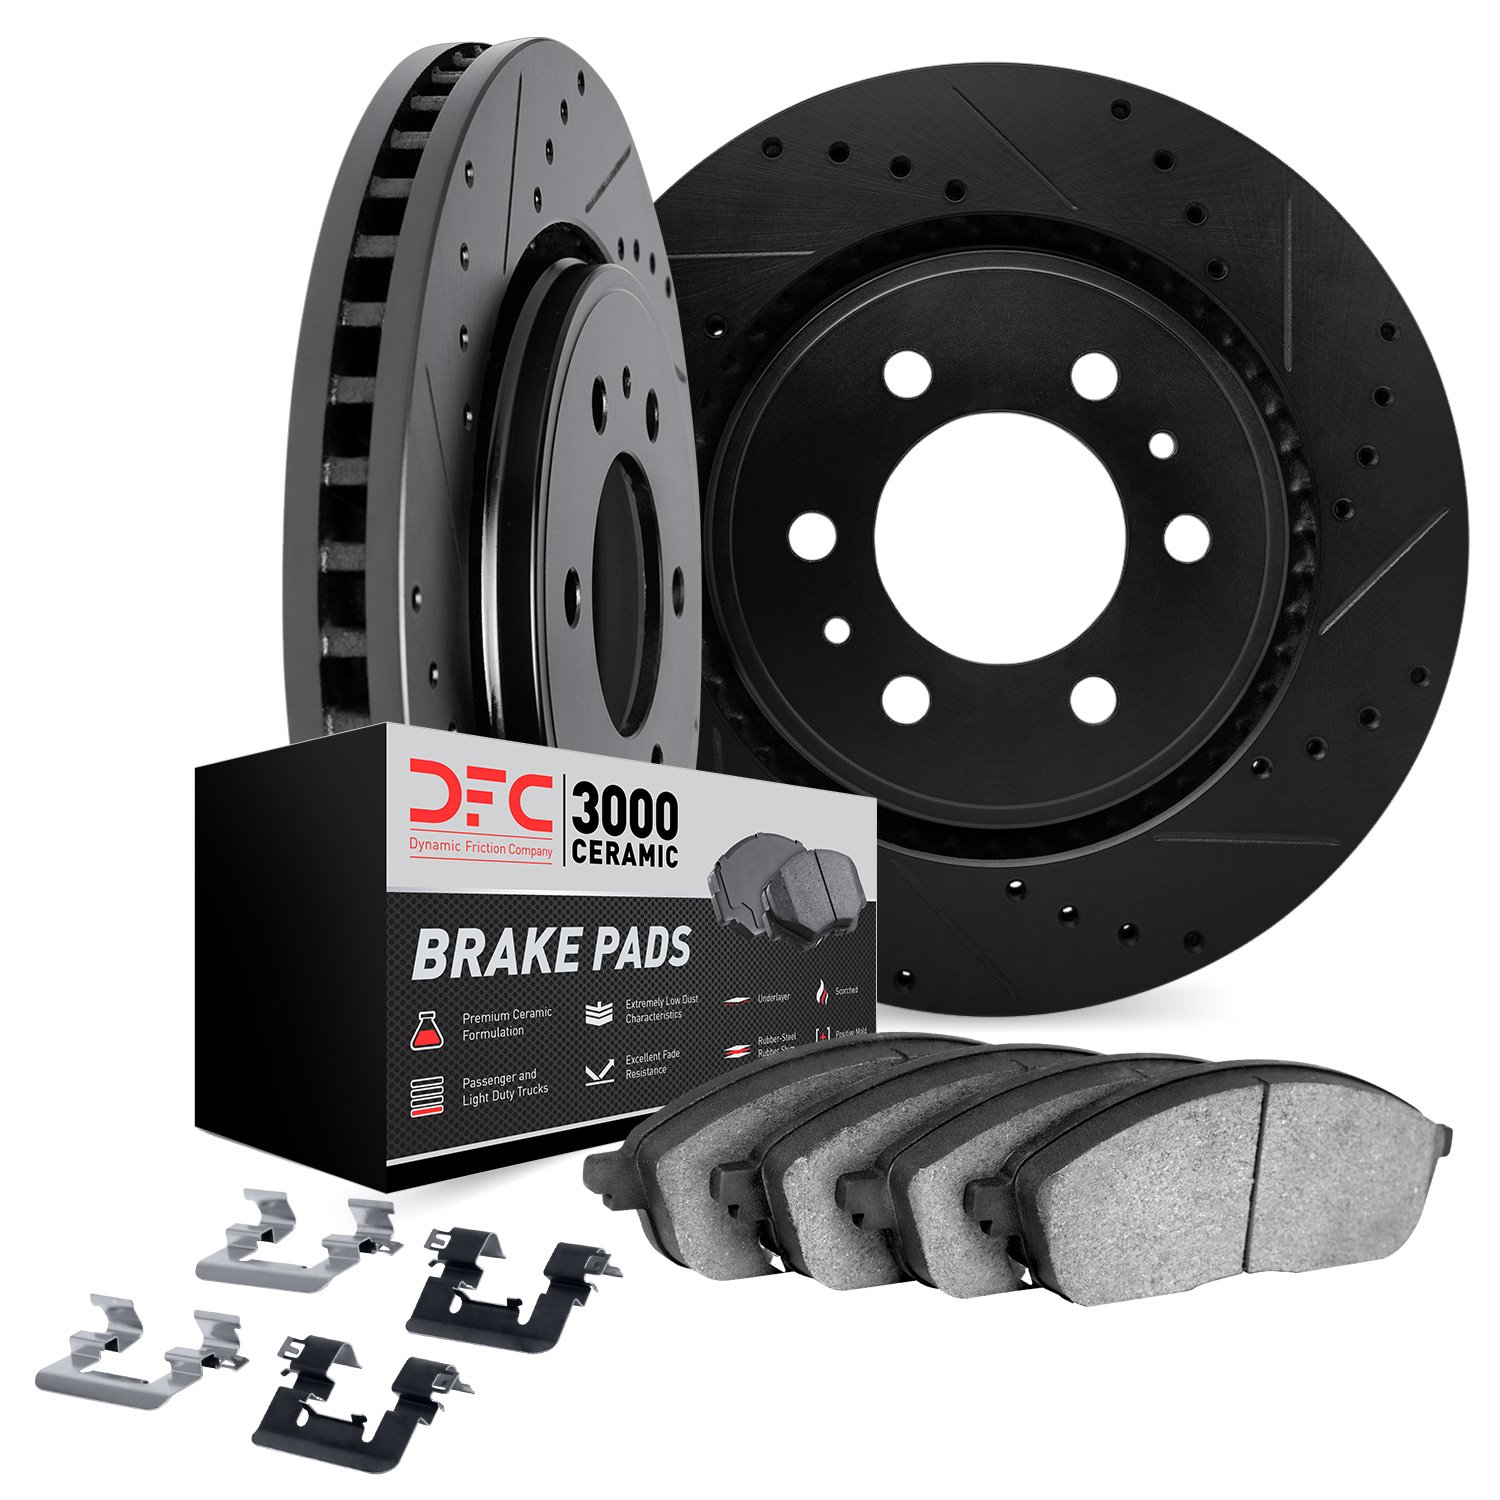 8312-92014 Drilled/Slotted Brake Rotors with 3000-Series Ceramic Brake Pads Kit & Hardware [Black], 2013-2015 Lexus/Toyota/Scion